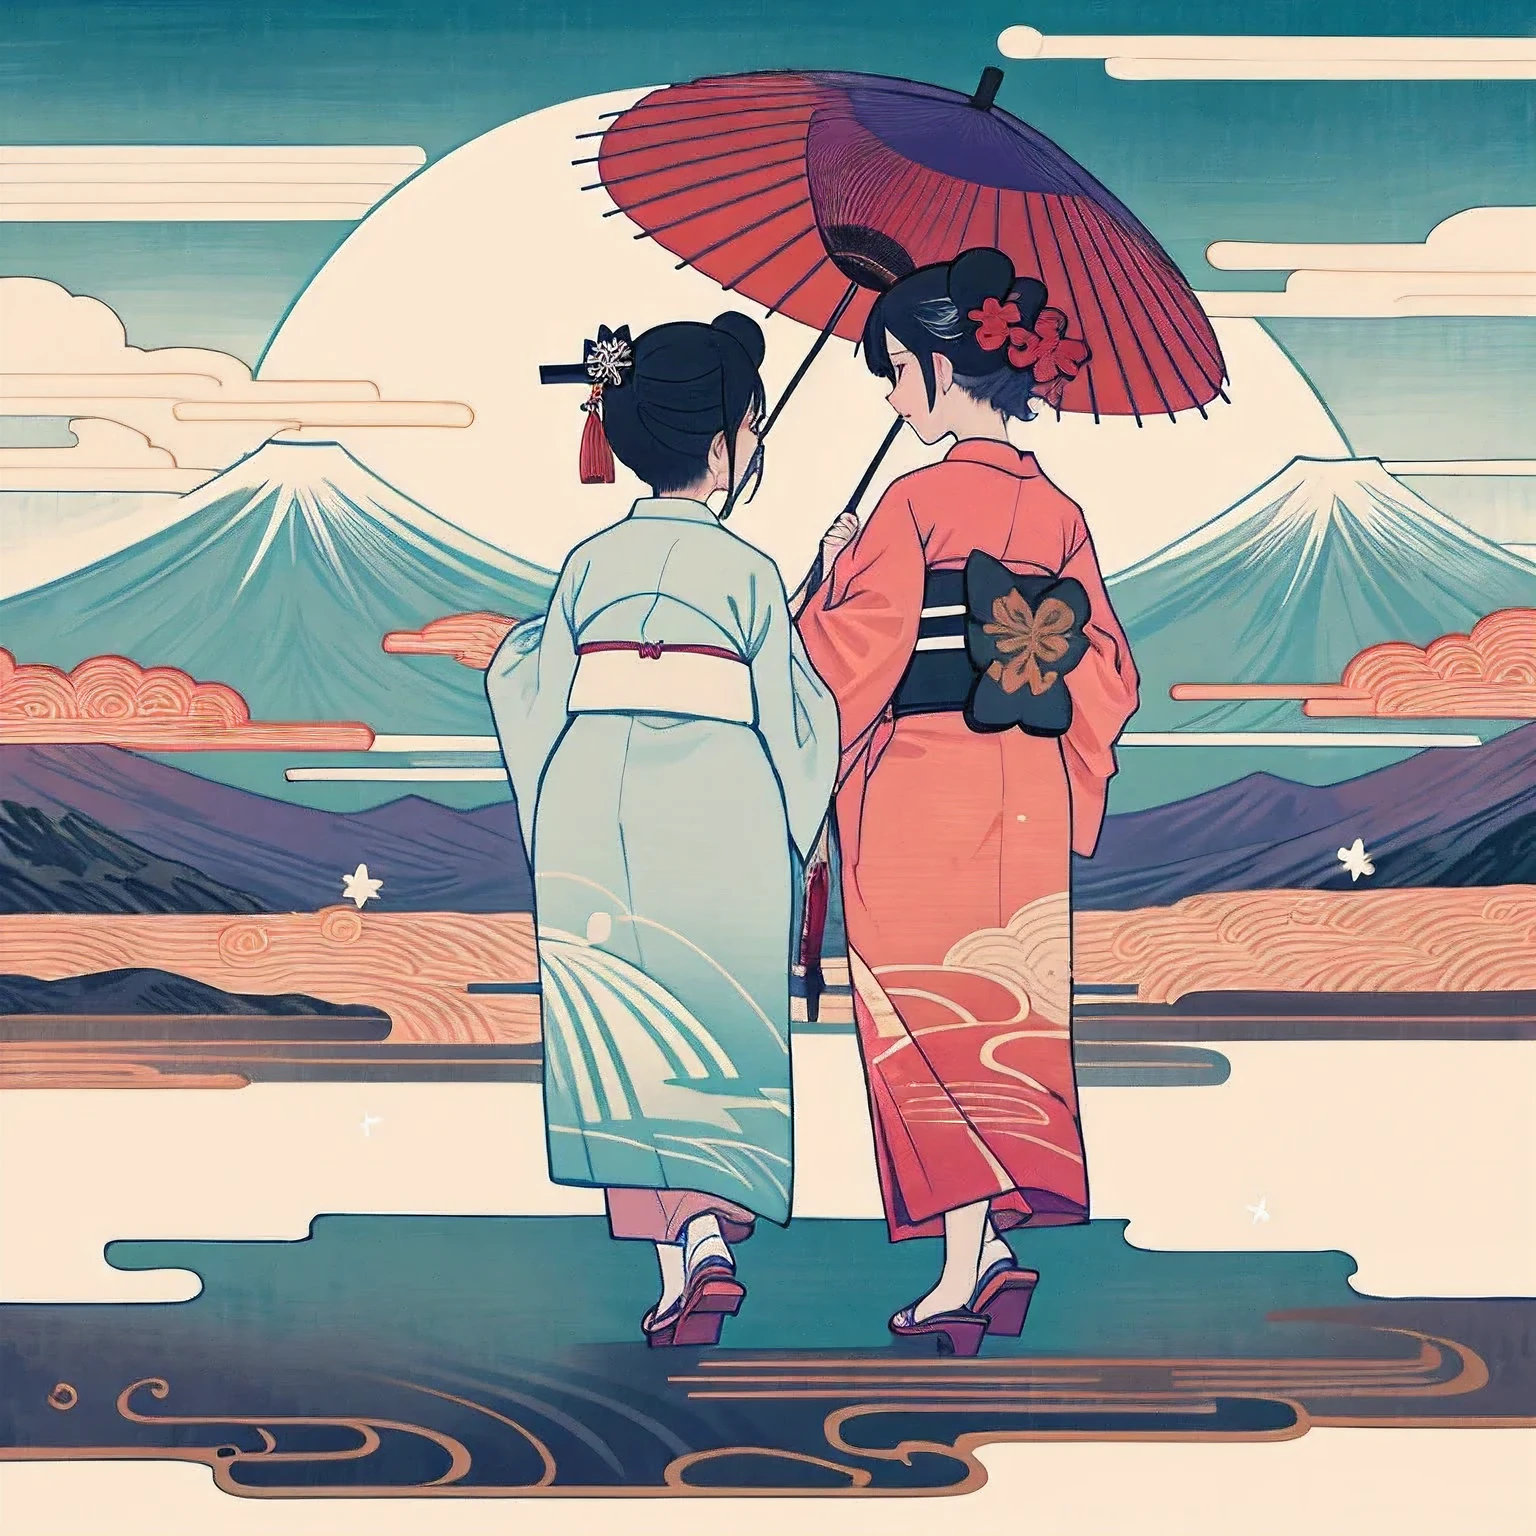 京都の舞妓さん, 二人, 着物を着る, 二人並んで立って歩いている, 二人, 両方とも女性, 白塗りの顔, 後ろ姿, Ukiyo-e 1, 全身アングル, 下駄を履く, 和傘を差して歩く, 紫と白の着物＆赤と白の着物を着て, 背景には大きな富士山が見える., キラキラと輝く幻想的な雰囲気